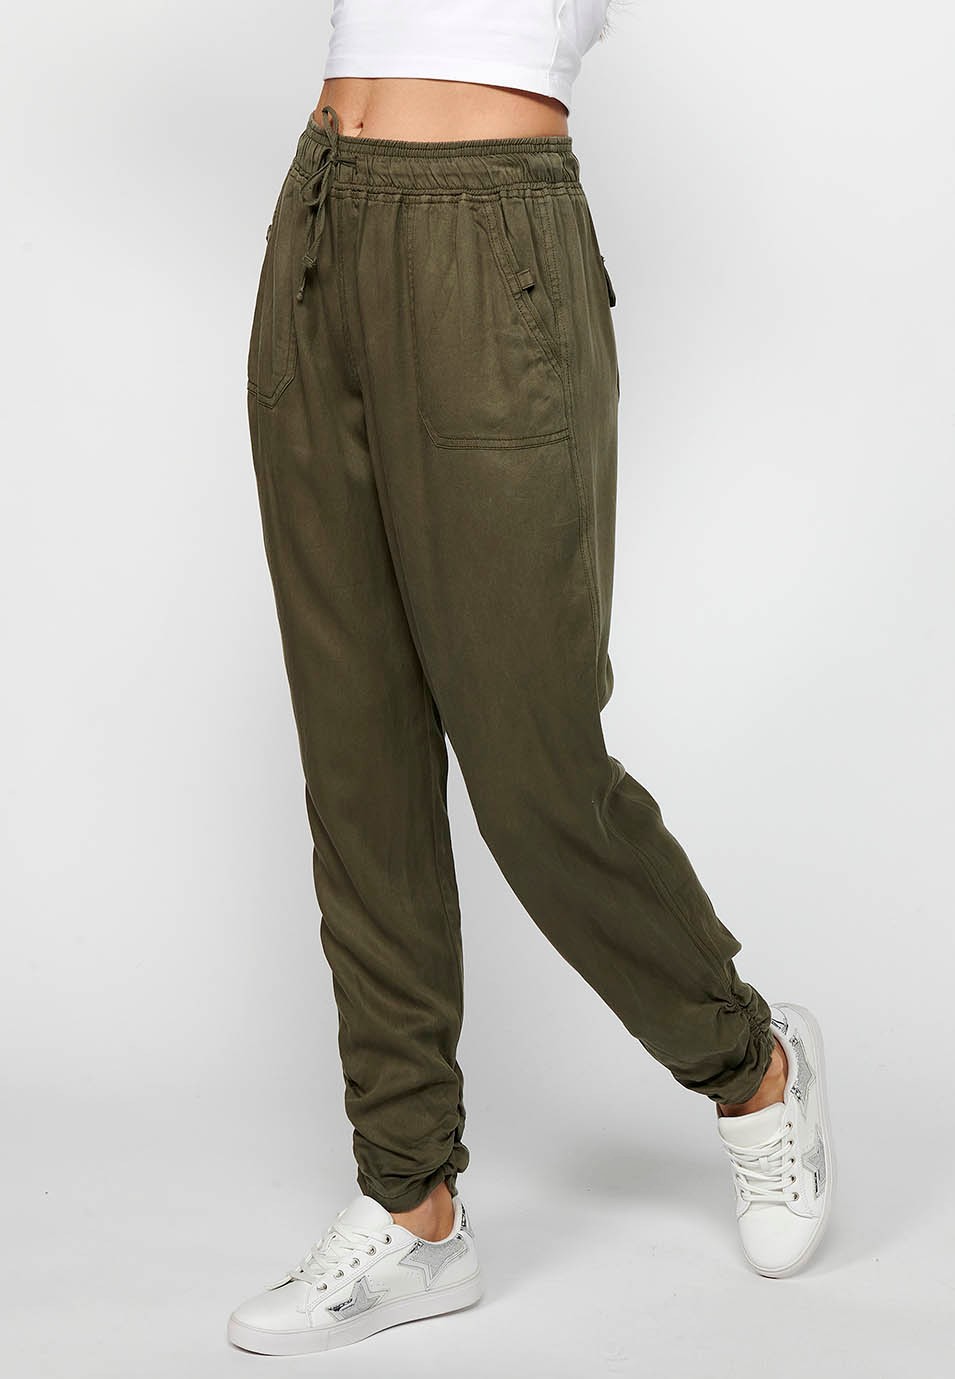 Pantalon de jogging long avec finition bouclée et taille caoutchoutée avec quatre poches, deux poches arrière à rabat de couleur Kaki pour femme 2